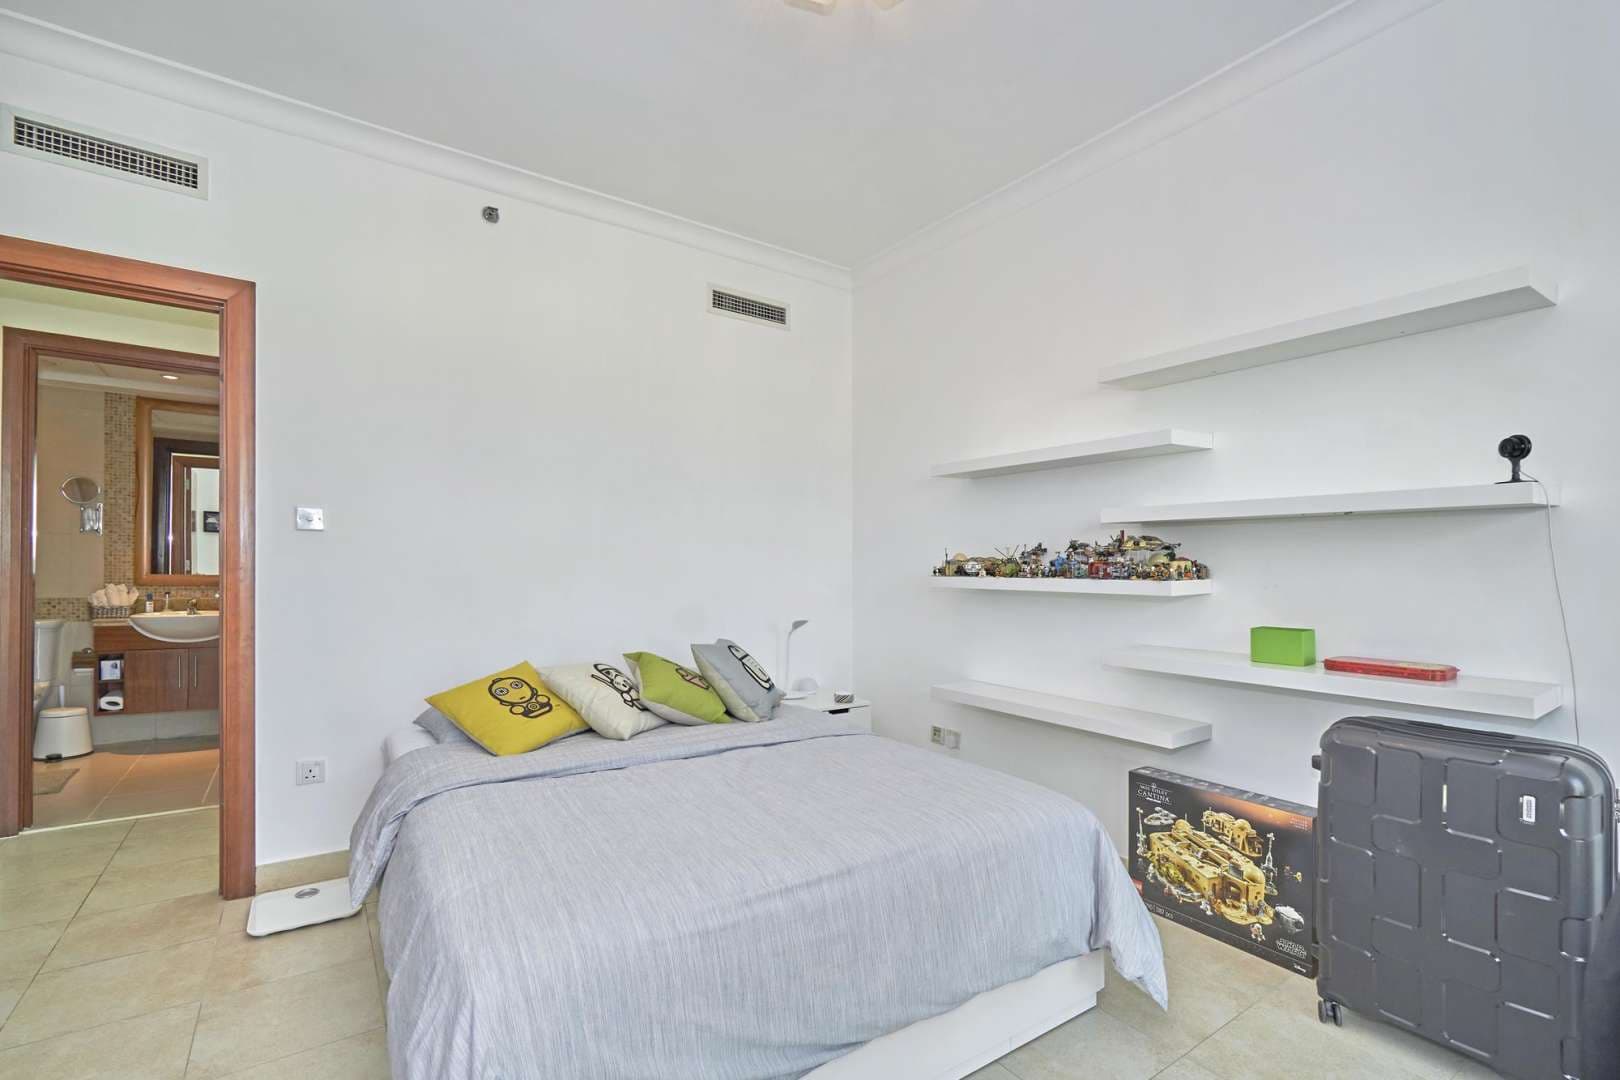 2 Bedroom Apartment For Rent The Fairways Lp05668 2265c17a9ee39200.jpg